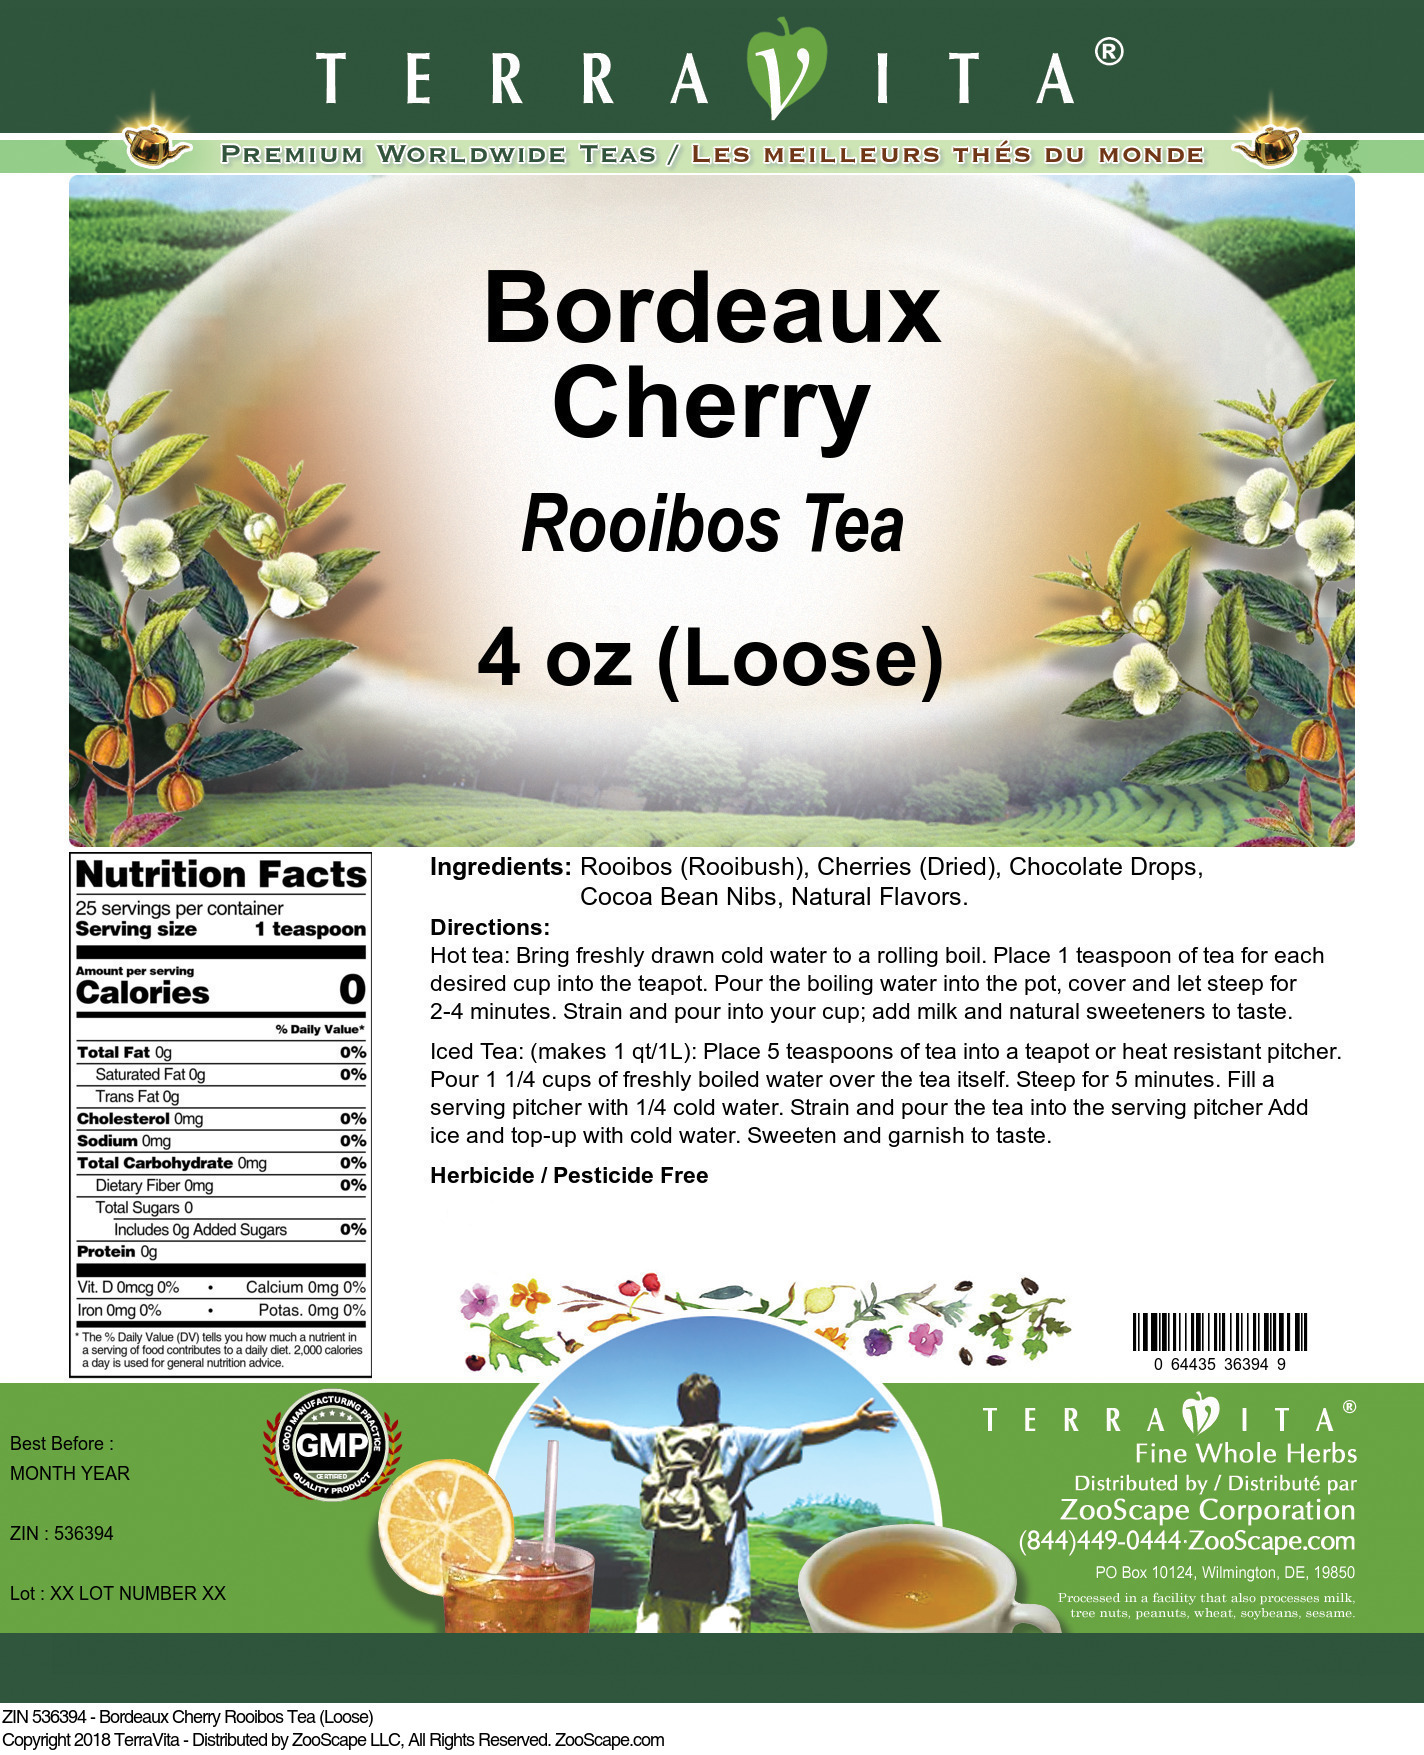 Bordeaux Cherry Rooibos Tea (Loose) - Label